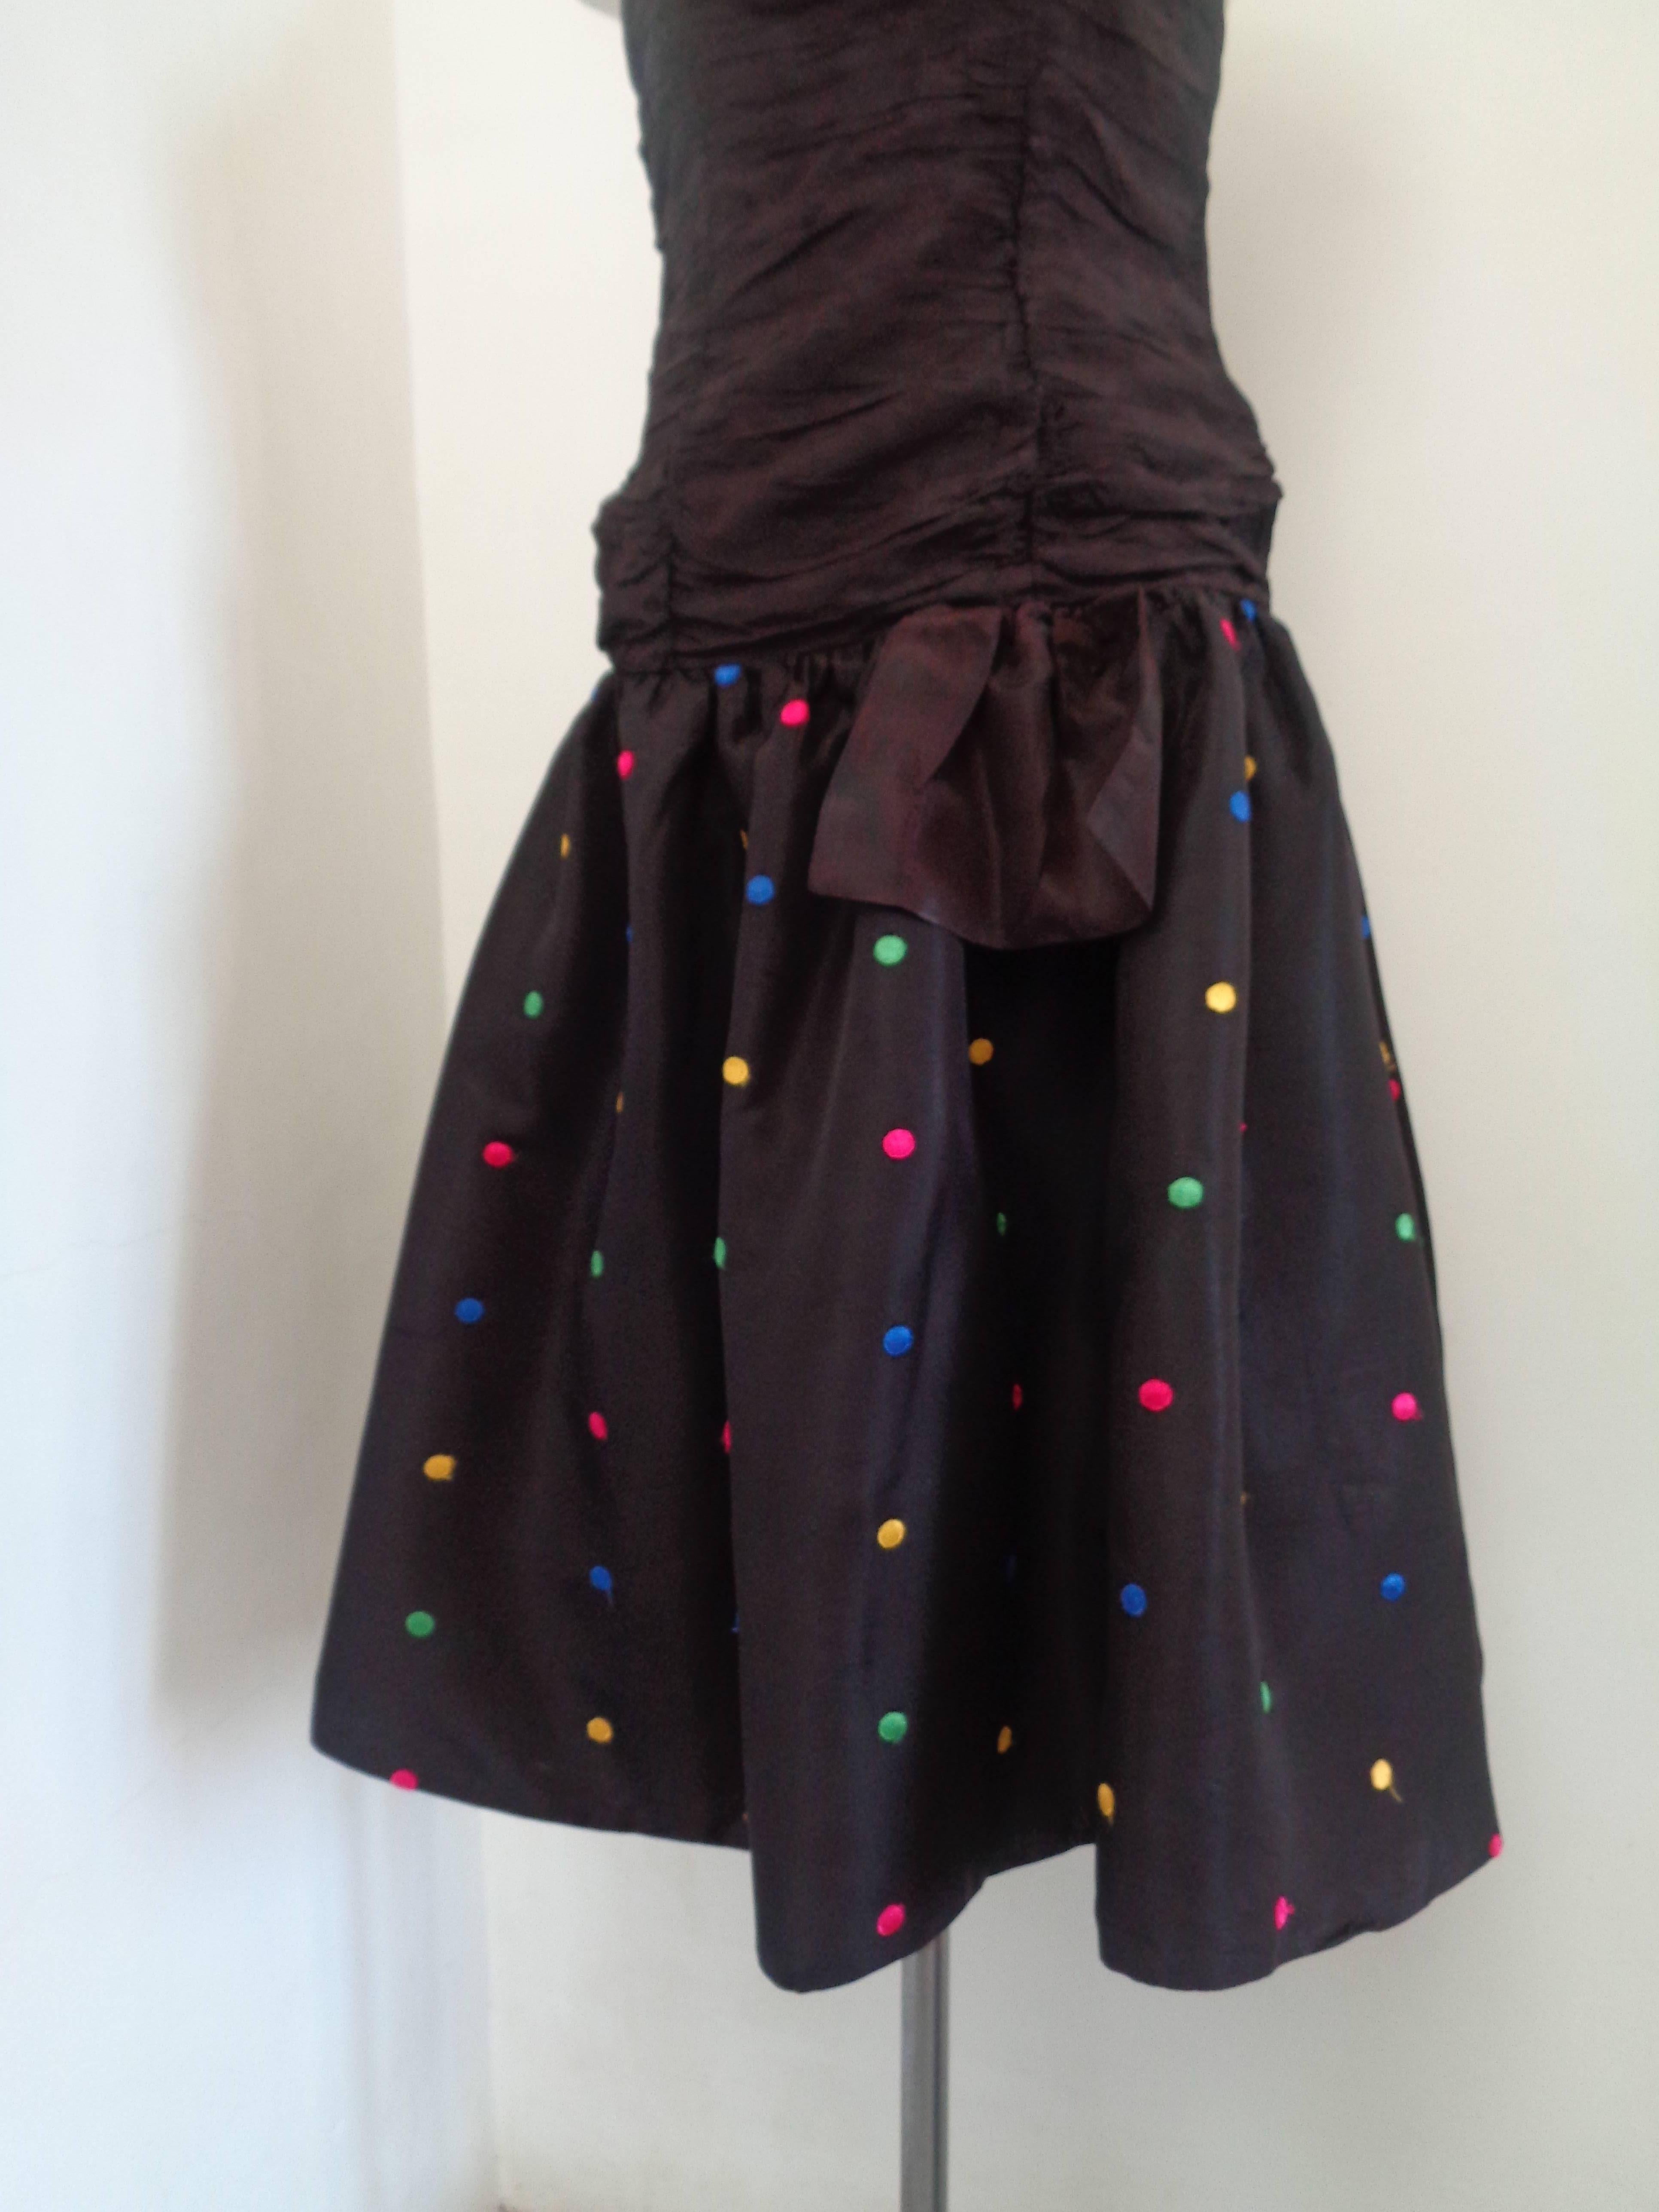 1980er Jahre Prom Night Blacke Kleid mit Pois auf Rock verschönert

Vollständig in Italien hergestellt 

Zusammensetzung: Viskose, Polyester, Polyamid

Größe 36